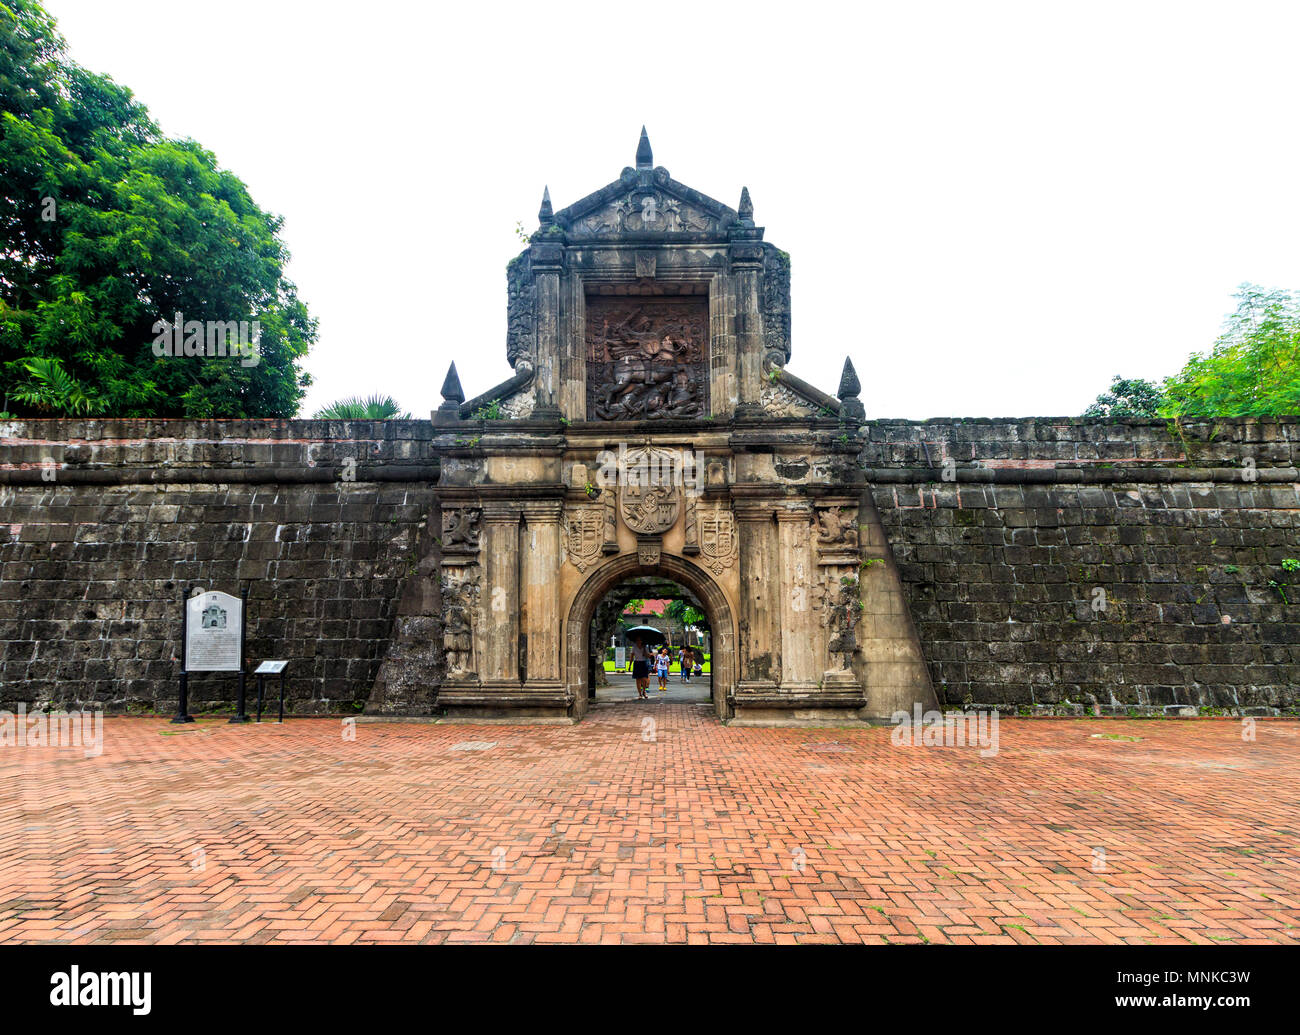 Fort Santiago, Manila, Philippines, 19 August 2017 - Fort Santiago in Manila, Philippines Stock Photo